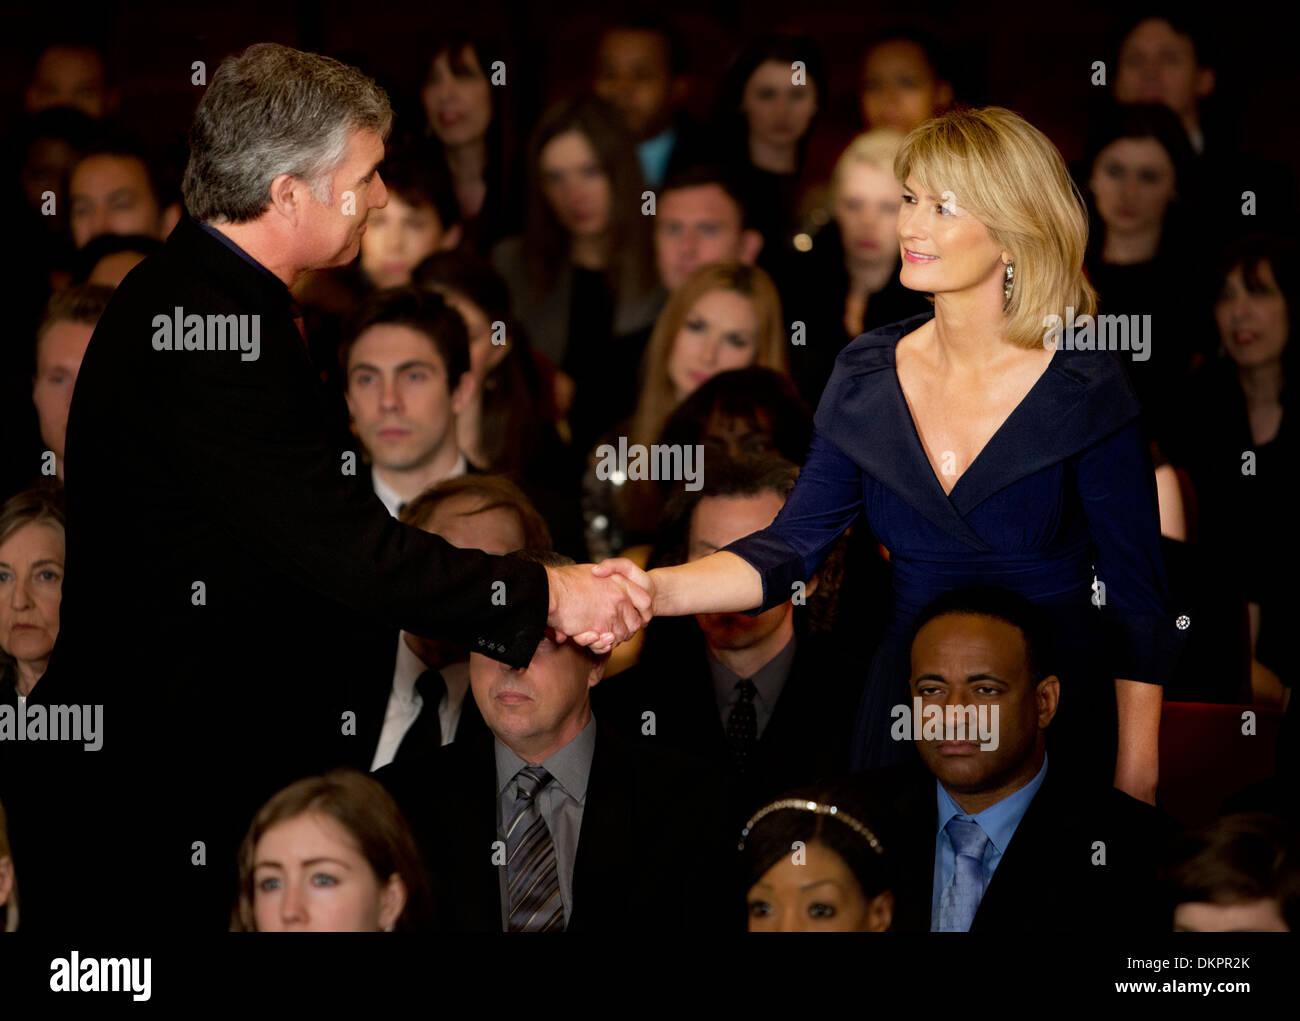 L'homme et la femme handshaking in theater audience Banque D'Images